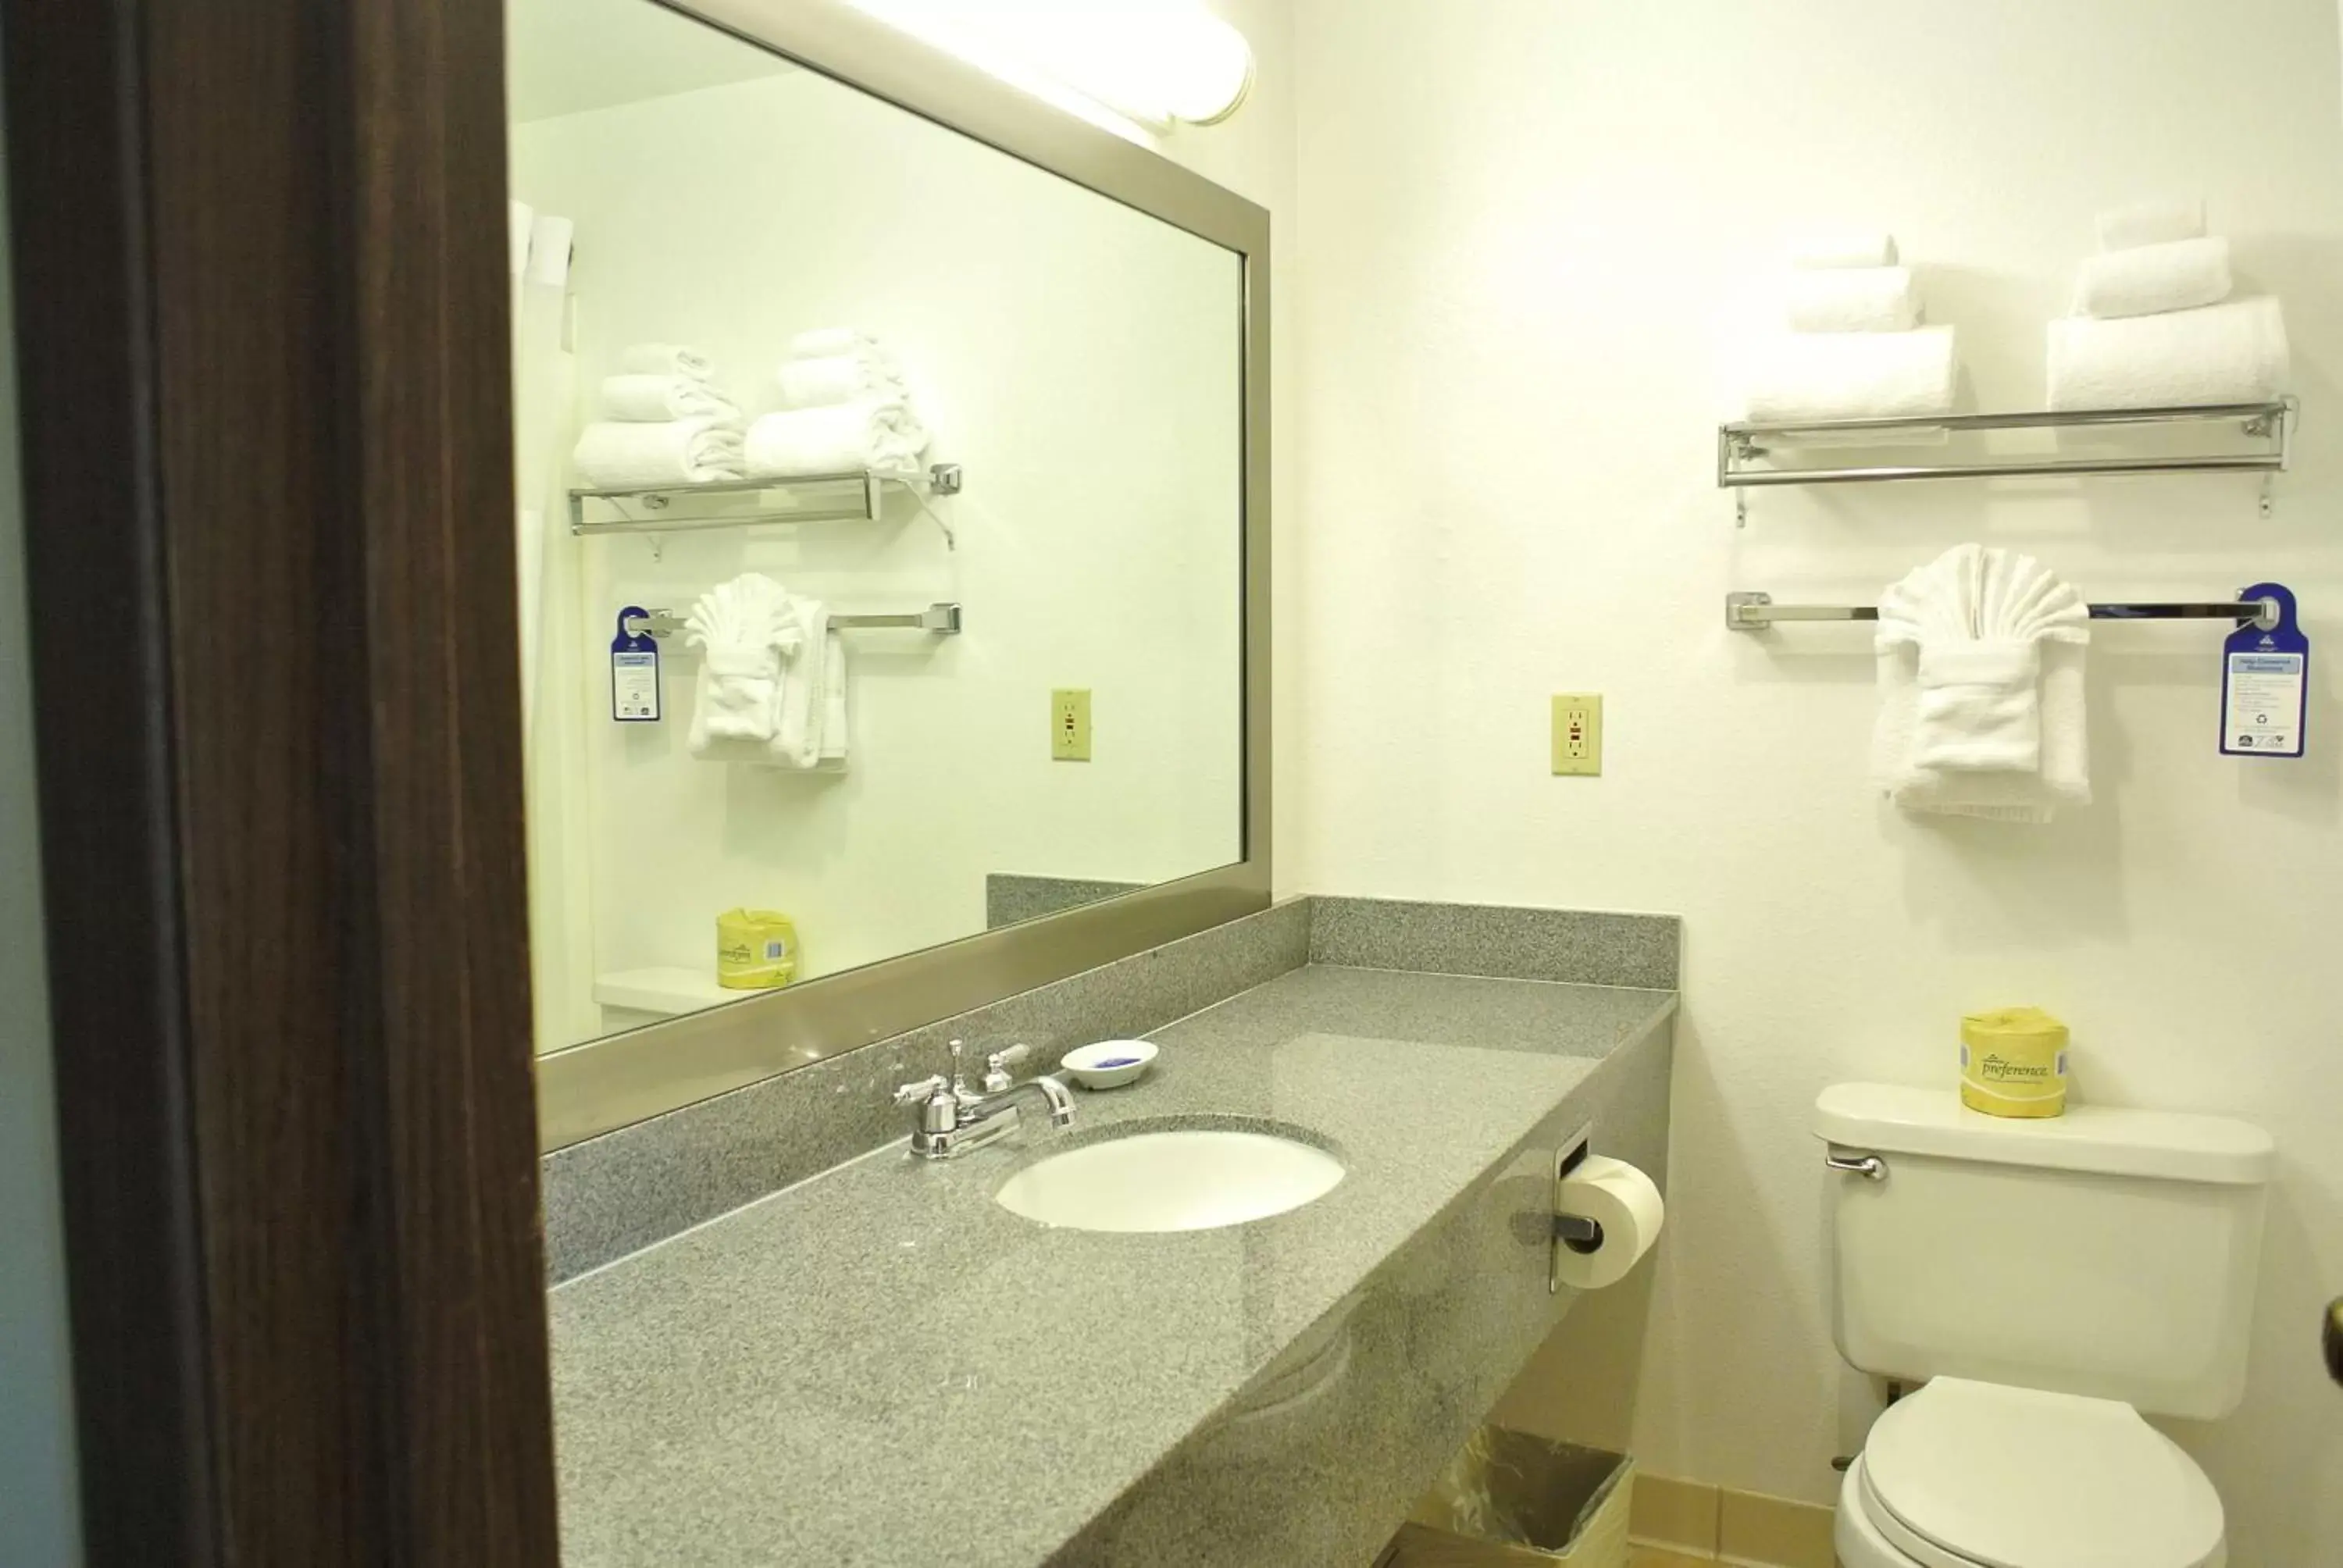 Toilet, Bathroom in Best Western Seattle Airport Hotel